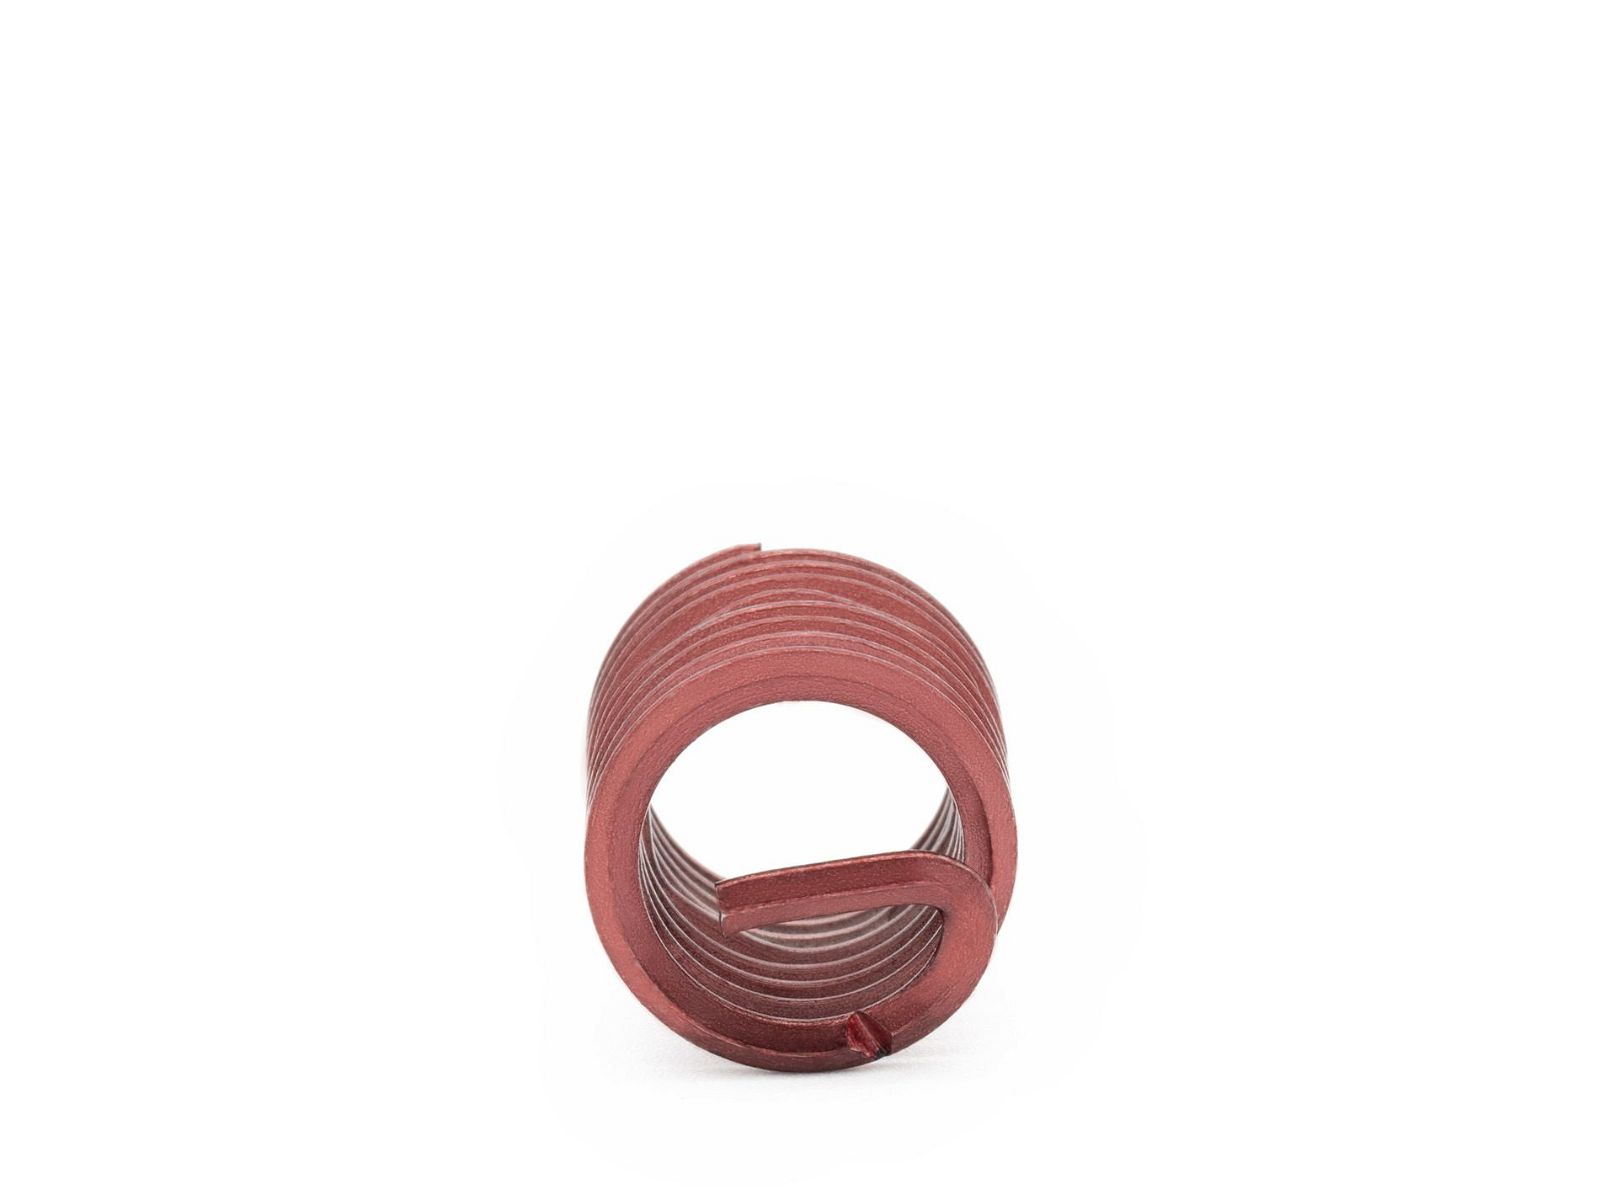 BaerCoil Wire Thread Inserts UNC No. 2 x 56 - 1.5 D (3.28 mm) - screw grip (screw locking) - 100 pcs.